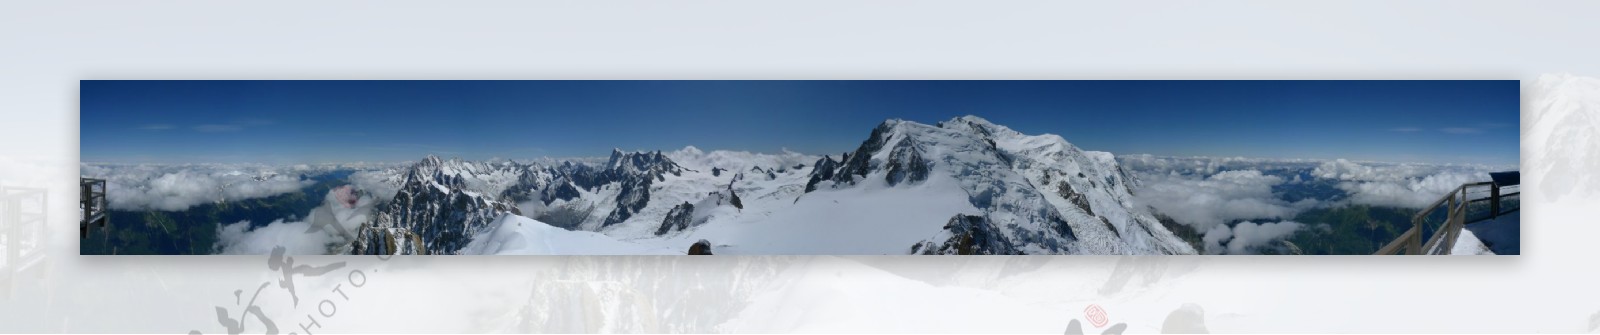 宽幅白雪覆盖云雾弥漫的群山风景图片图片